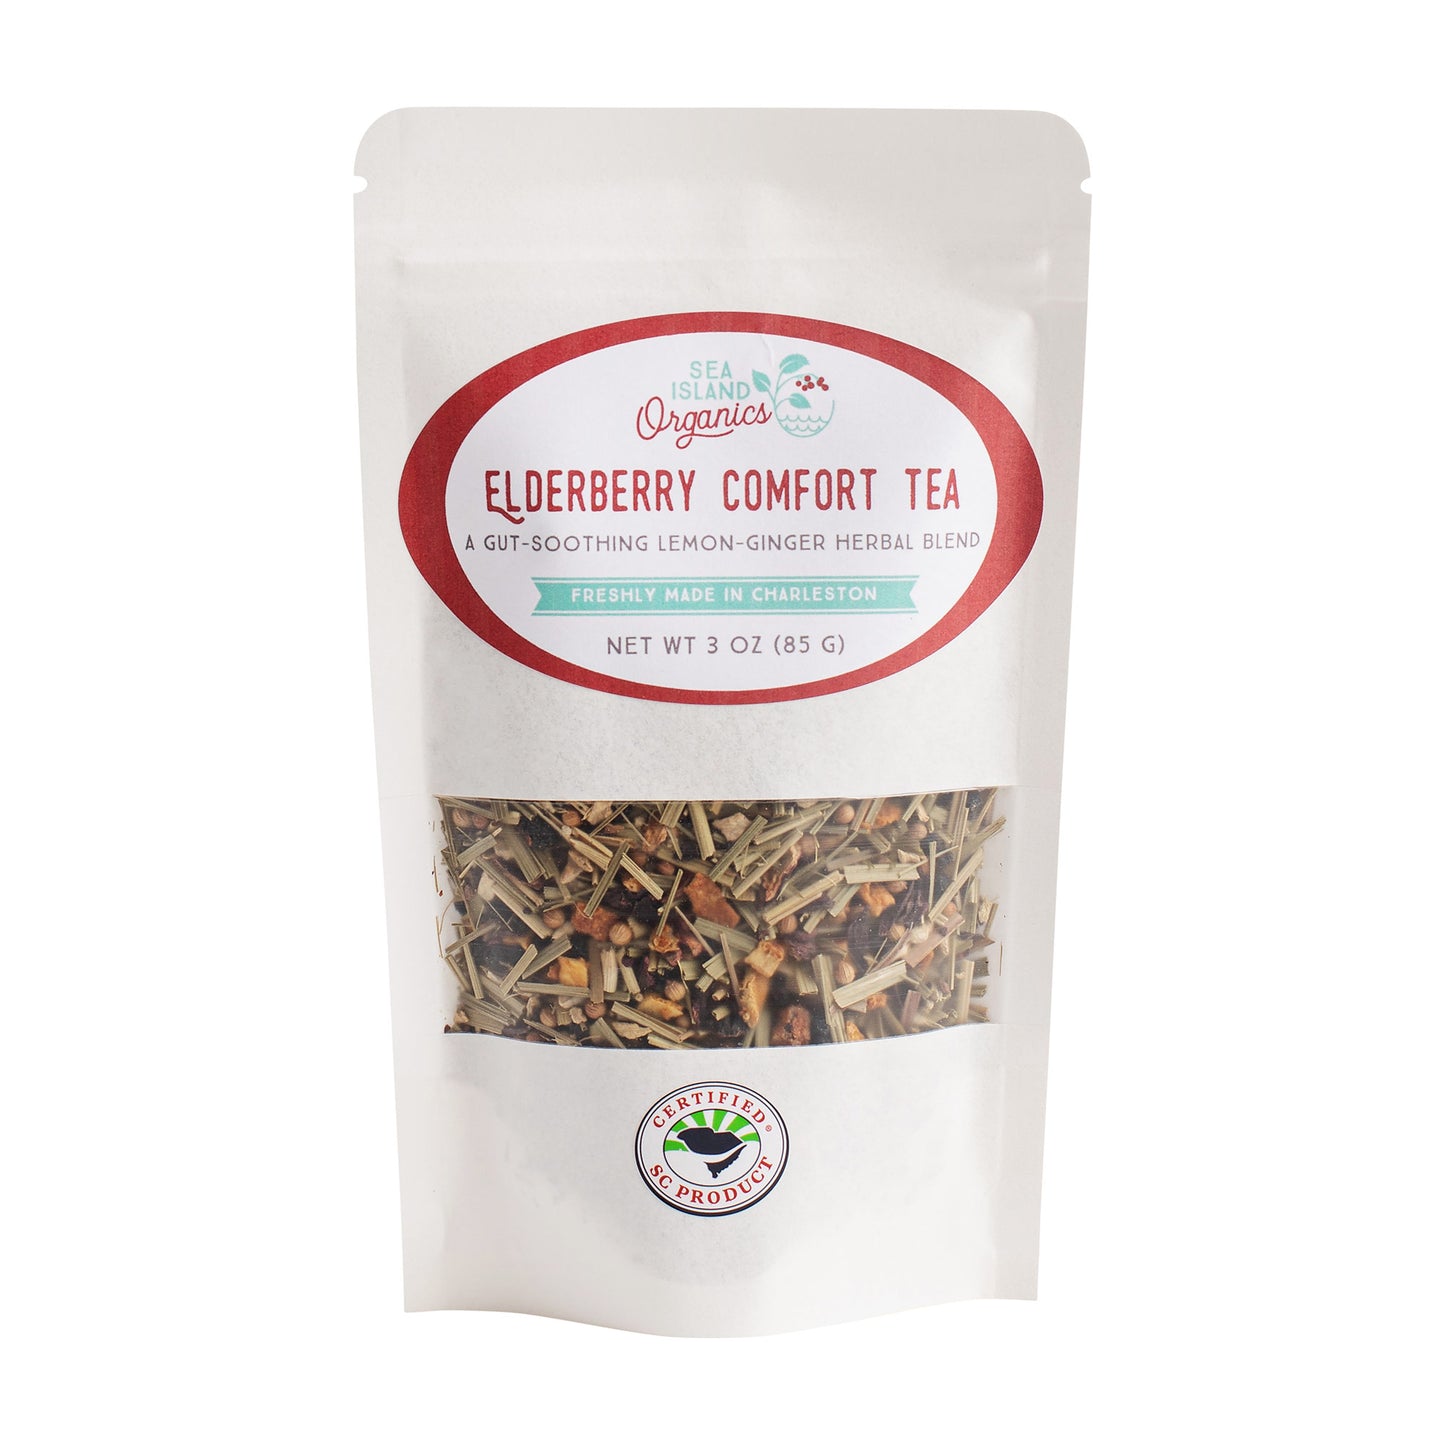 Elderberry Comfort Tea